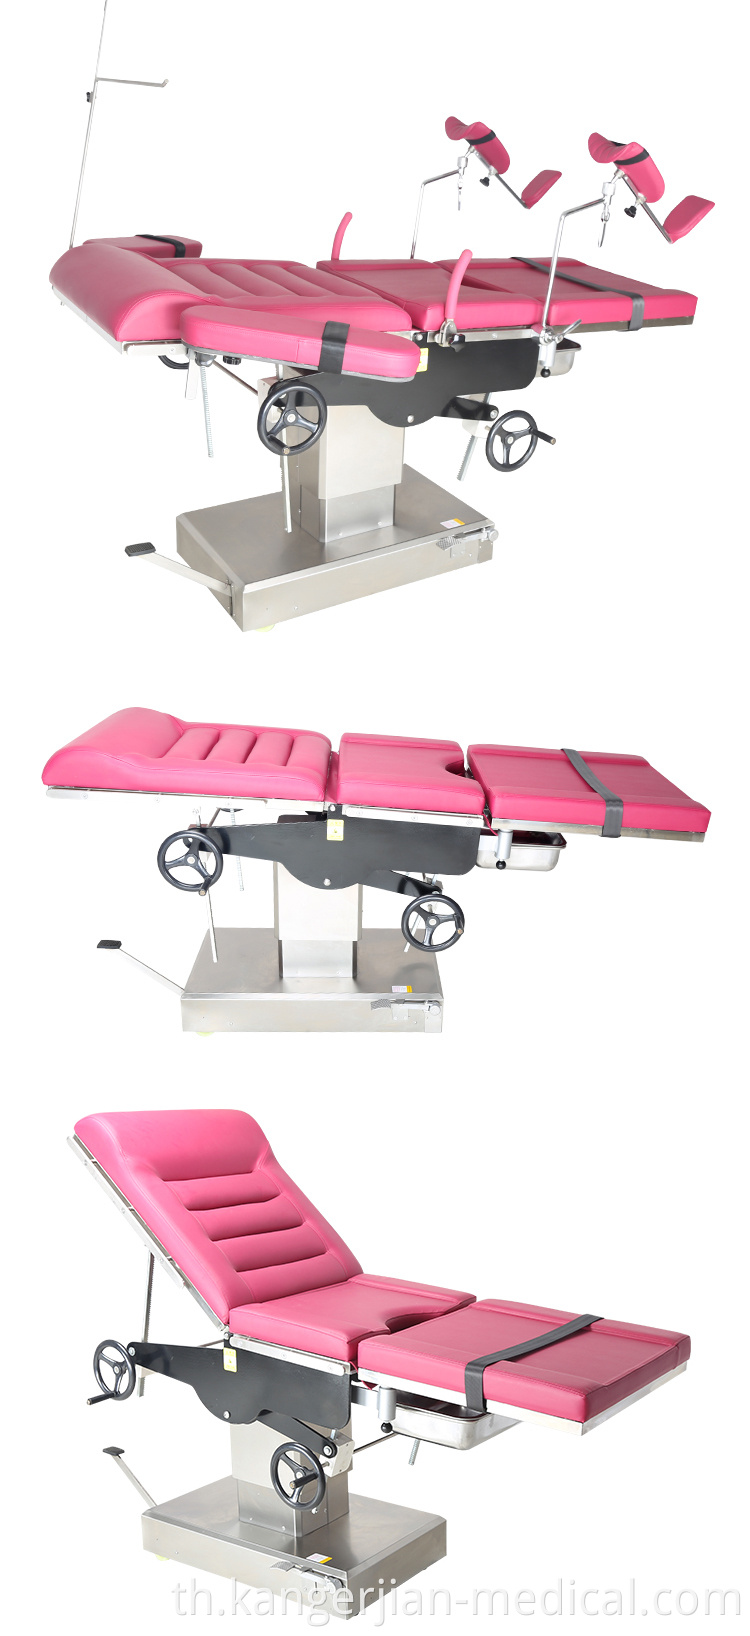 KSC ราคาถูกโรงพยาบาลเฟอร์นิเจอร์นรีเวชวิทยาเก้าอี้ใช้งานจัดส่งเตียงคู่มือนรีเวชวิทยา